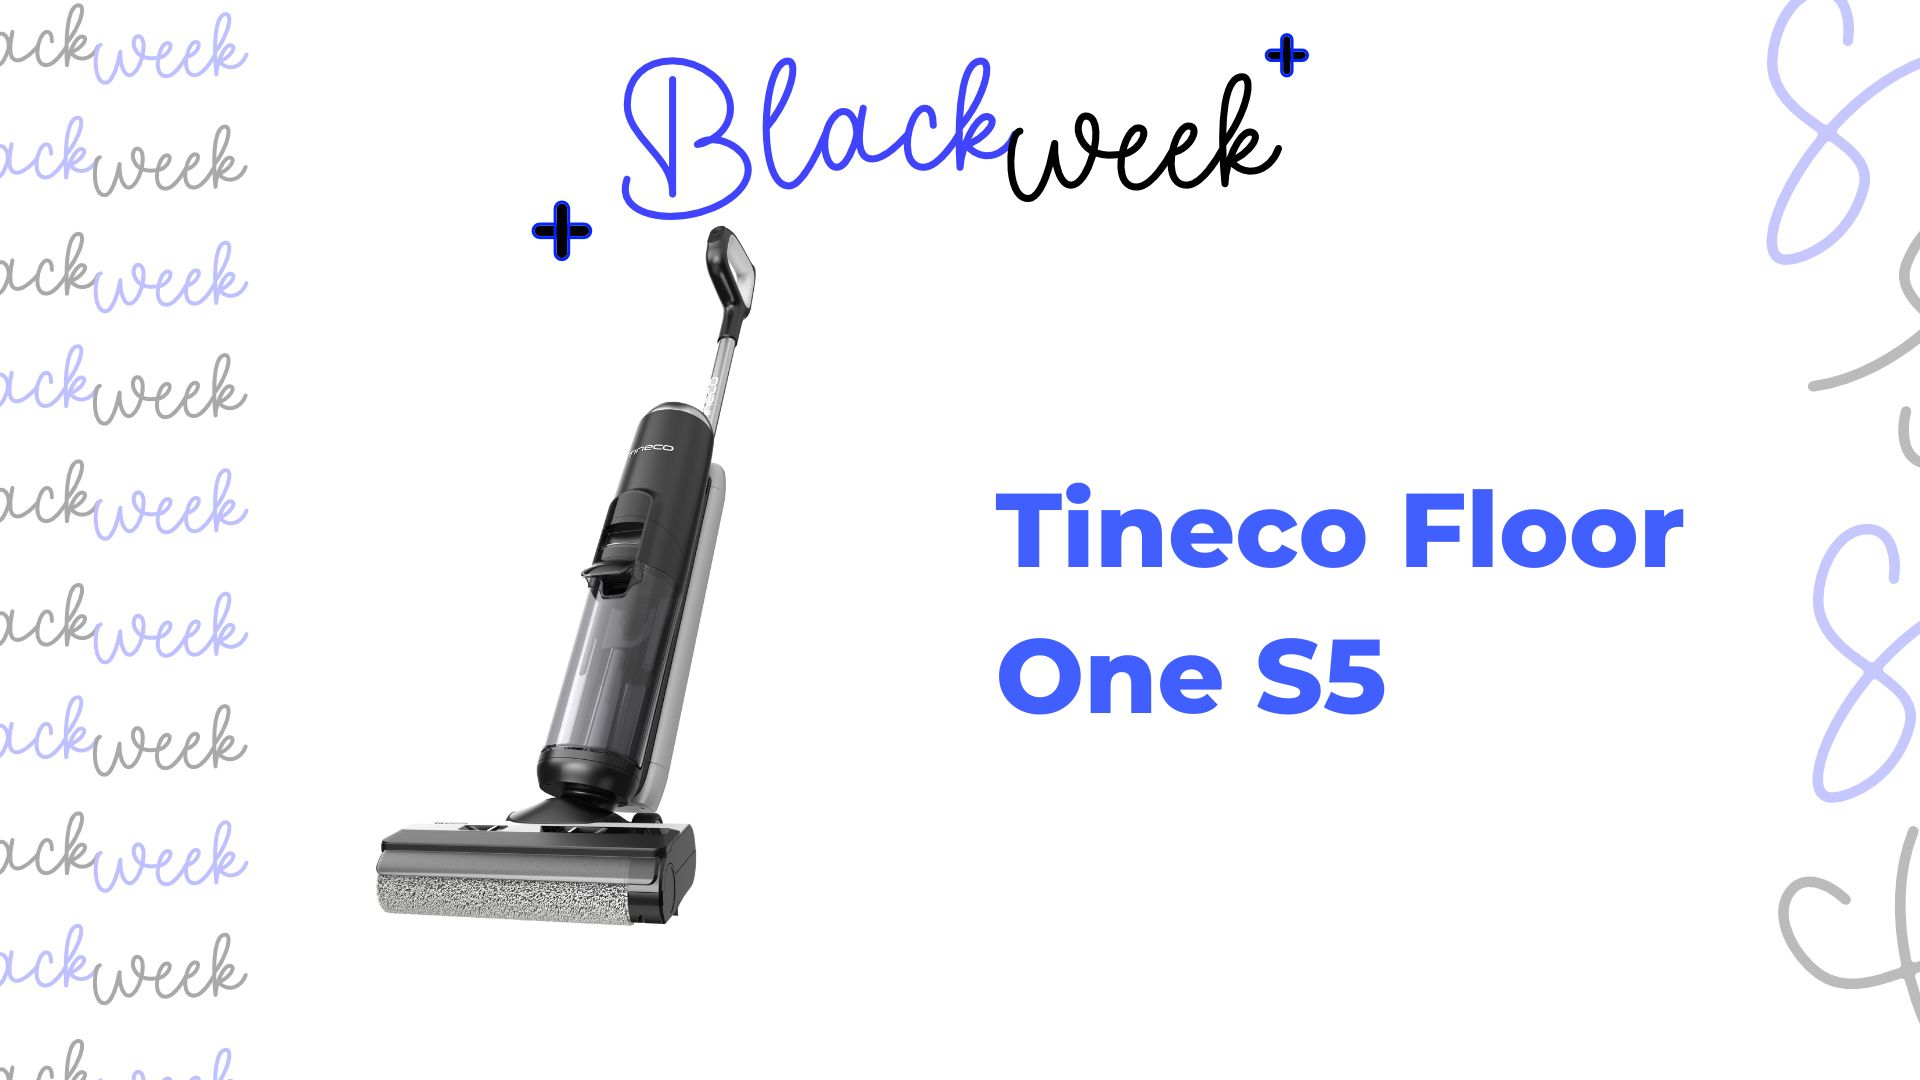 Pour le Black Friday, Tineco offre jusqu'à 200 euros d'économies